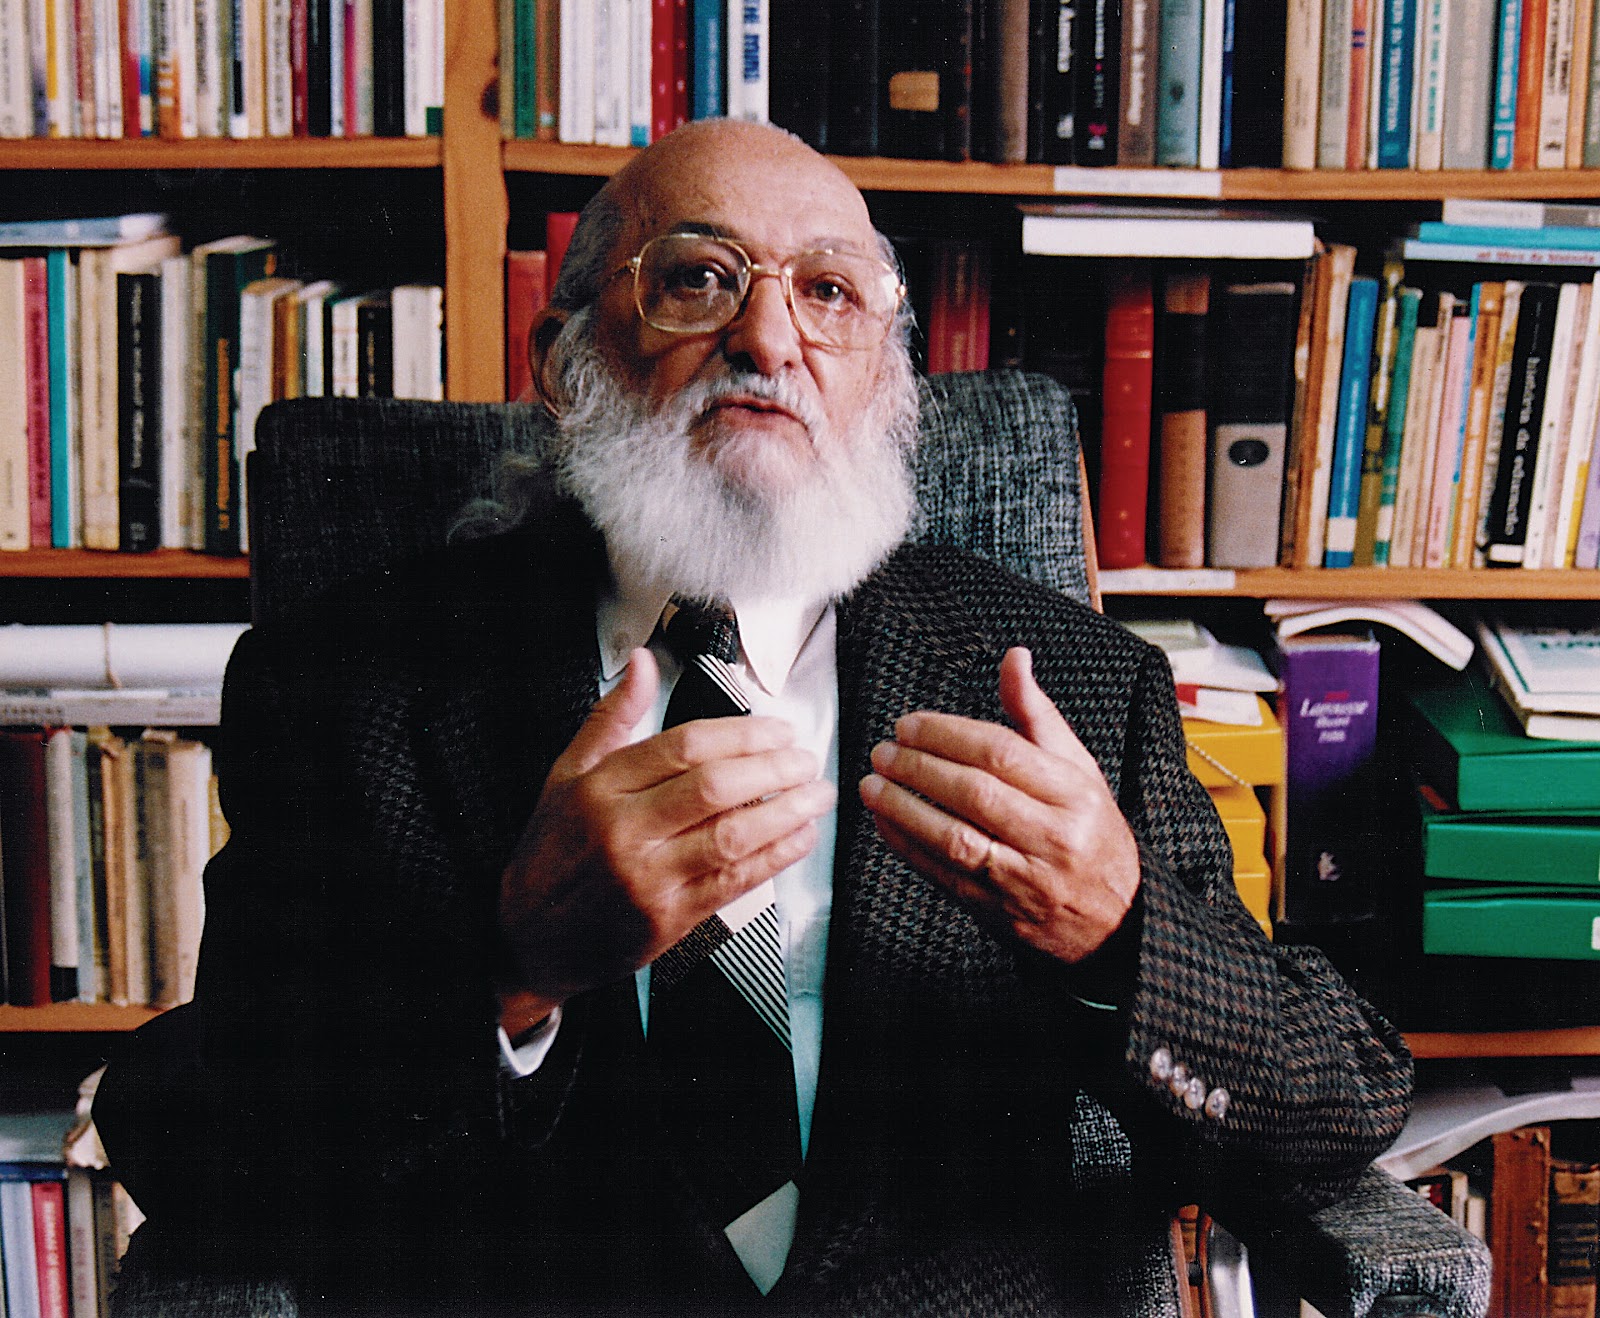 Imagem de Paulo Freire sentado, ao fundo encontra-se uma estante de madeira com diversos livros. Paulo Freire é um homem idoso, careca, de barba grande branca, usa óculos e terno preto listrado com preto; usa gravata preta e camisa social branca.